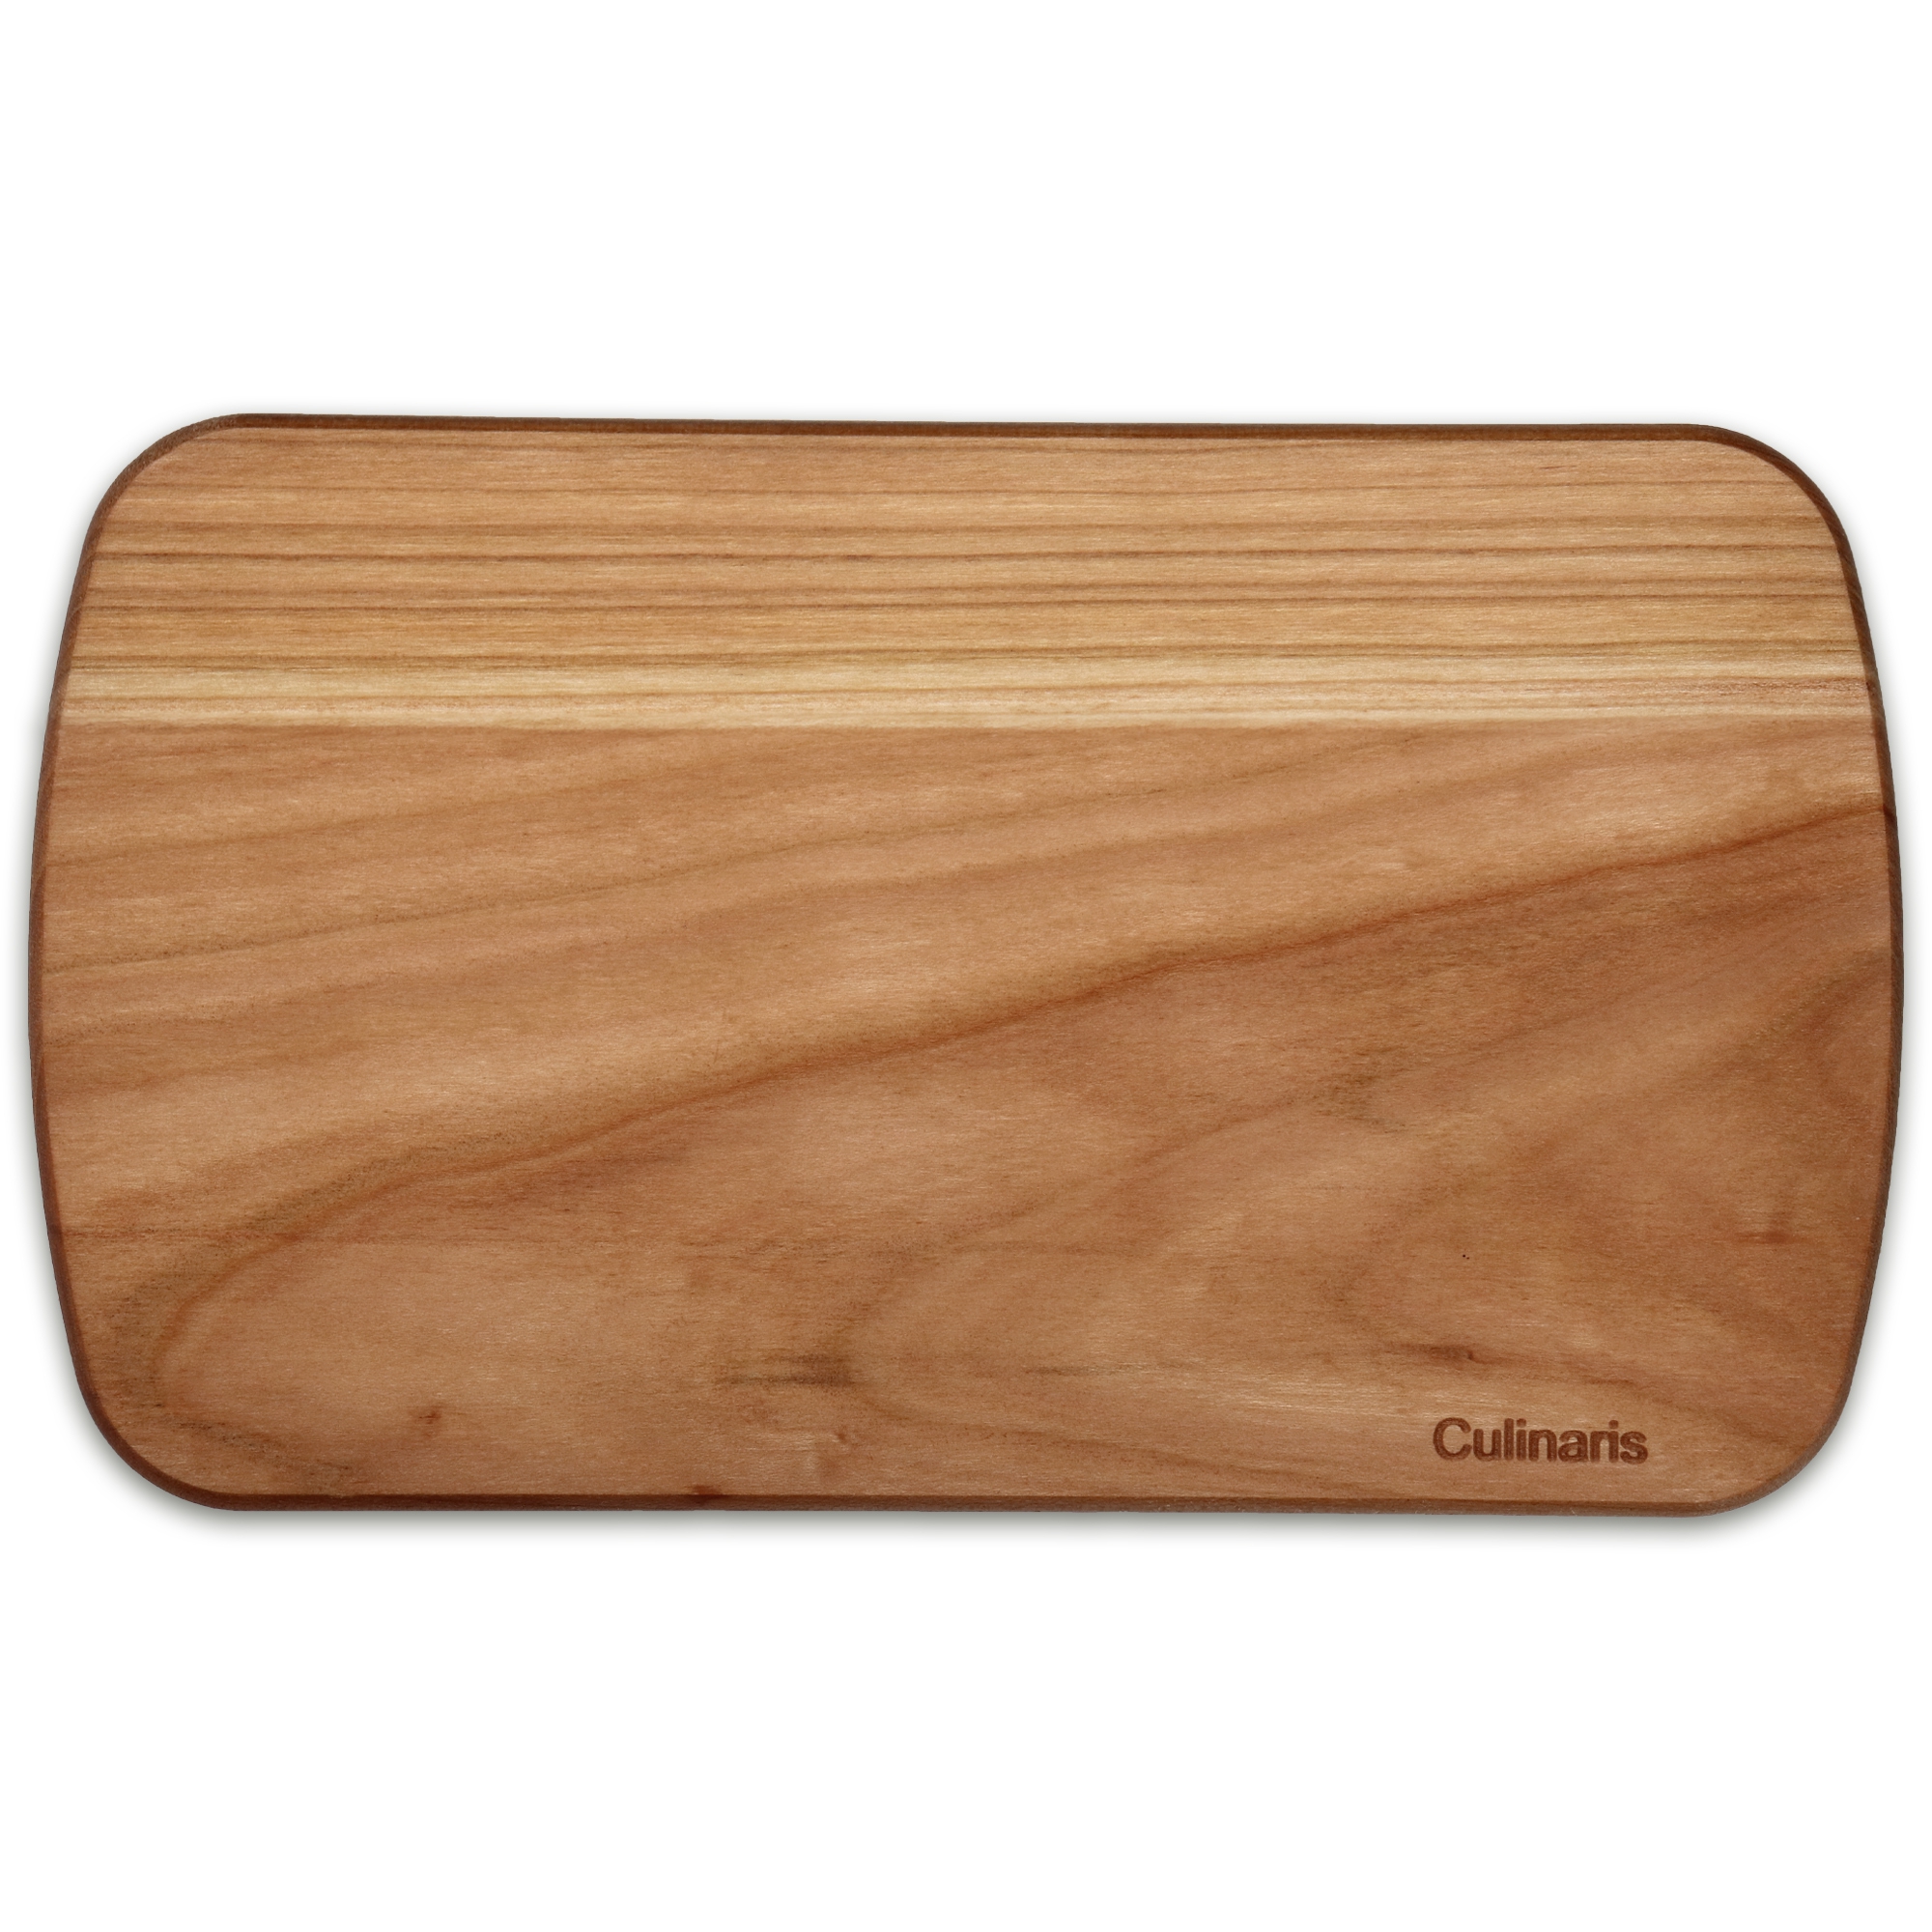 Culinaris - cutting board - cherry wood - 14 x 24 cm